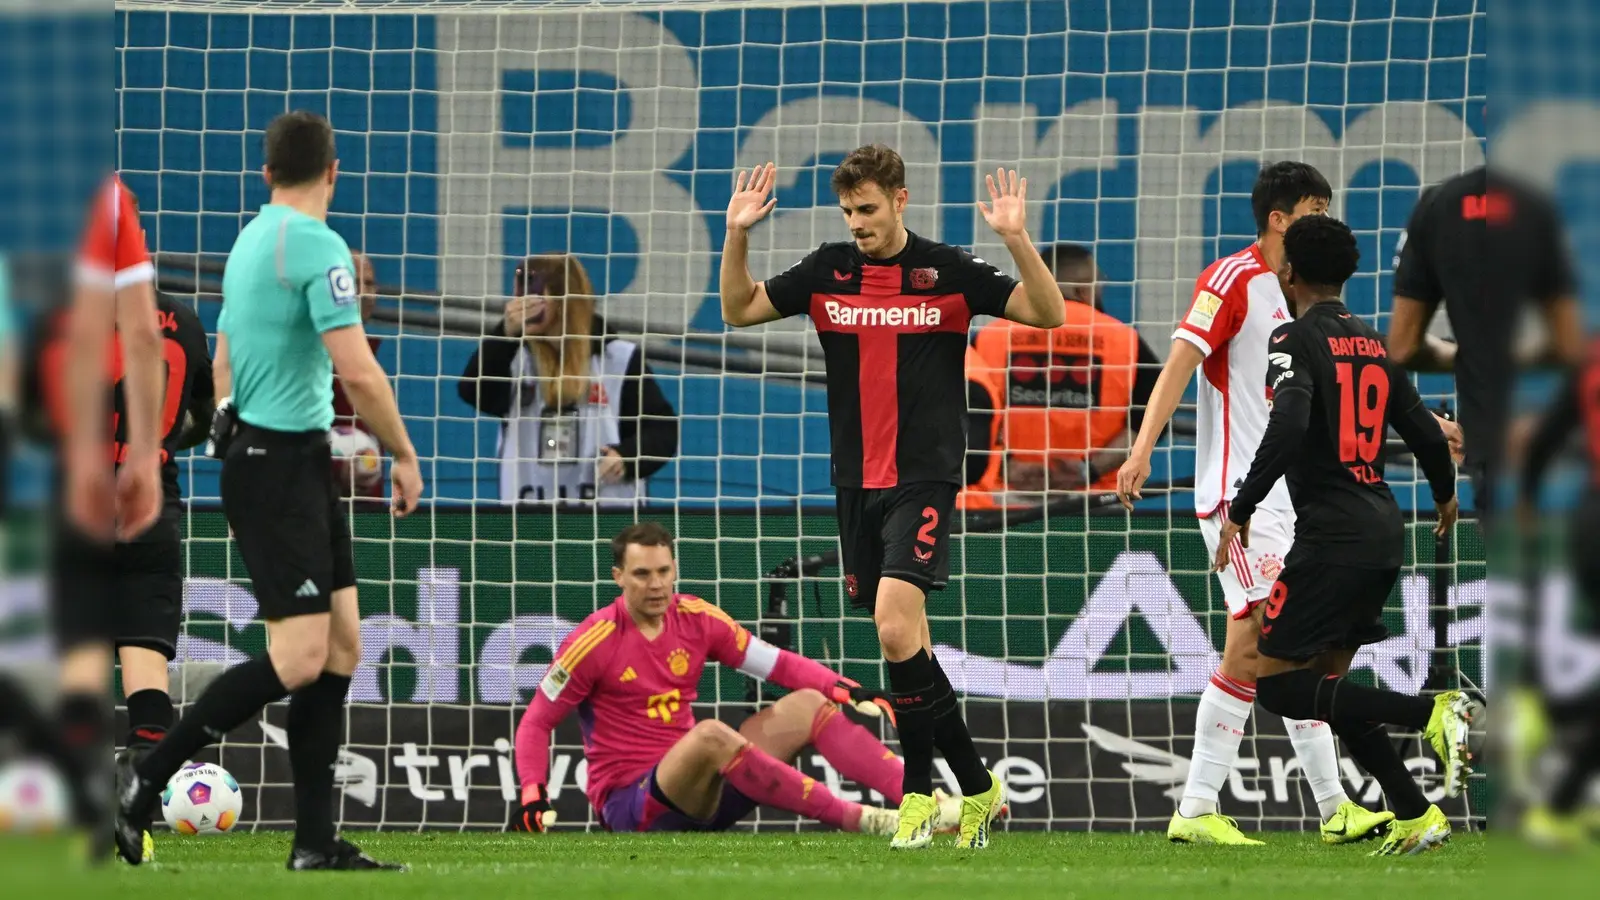 Leverkusens Josip Stanisic (M) wehrt nach seinem Tor zum 1:0 Jubelgesten ab. (Foto: Federico Gambarini/dpa)